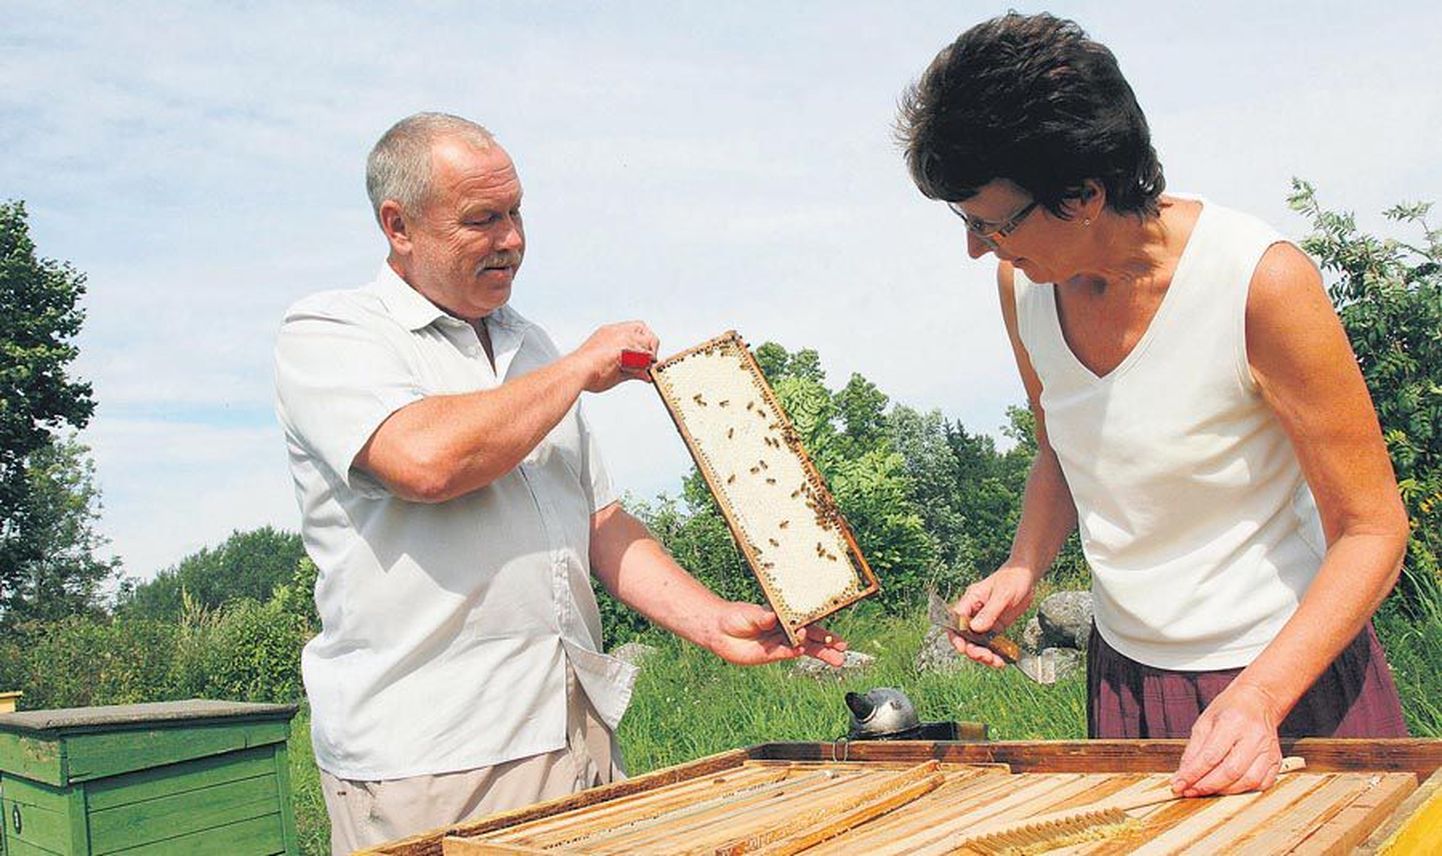 Jaak ja Marje Riis on mesilastega tegelnud lapsepõlvest peale ning juba aastakümneid oma teadmisi edasi andnud. Väga menukad on olnud nende korraldatavad hobimesinike kursused.